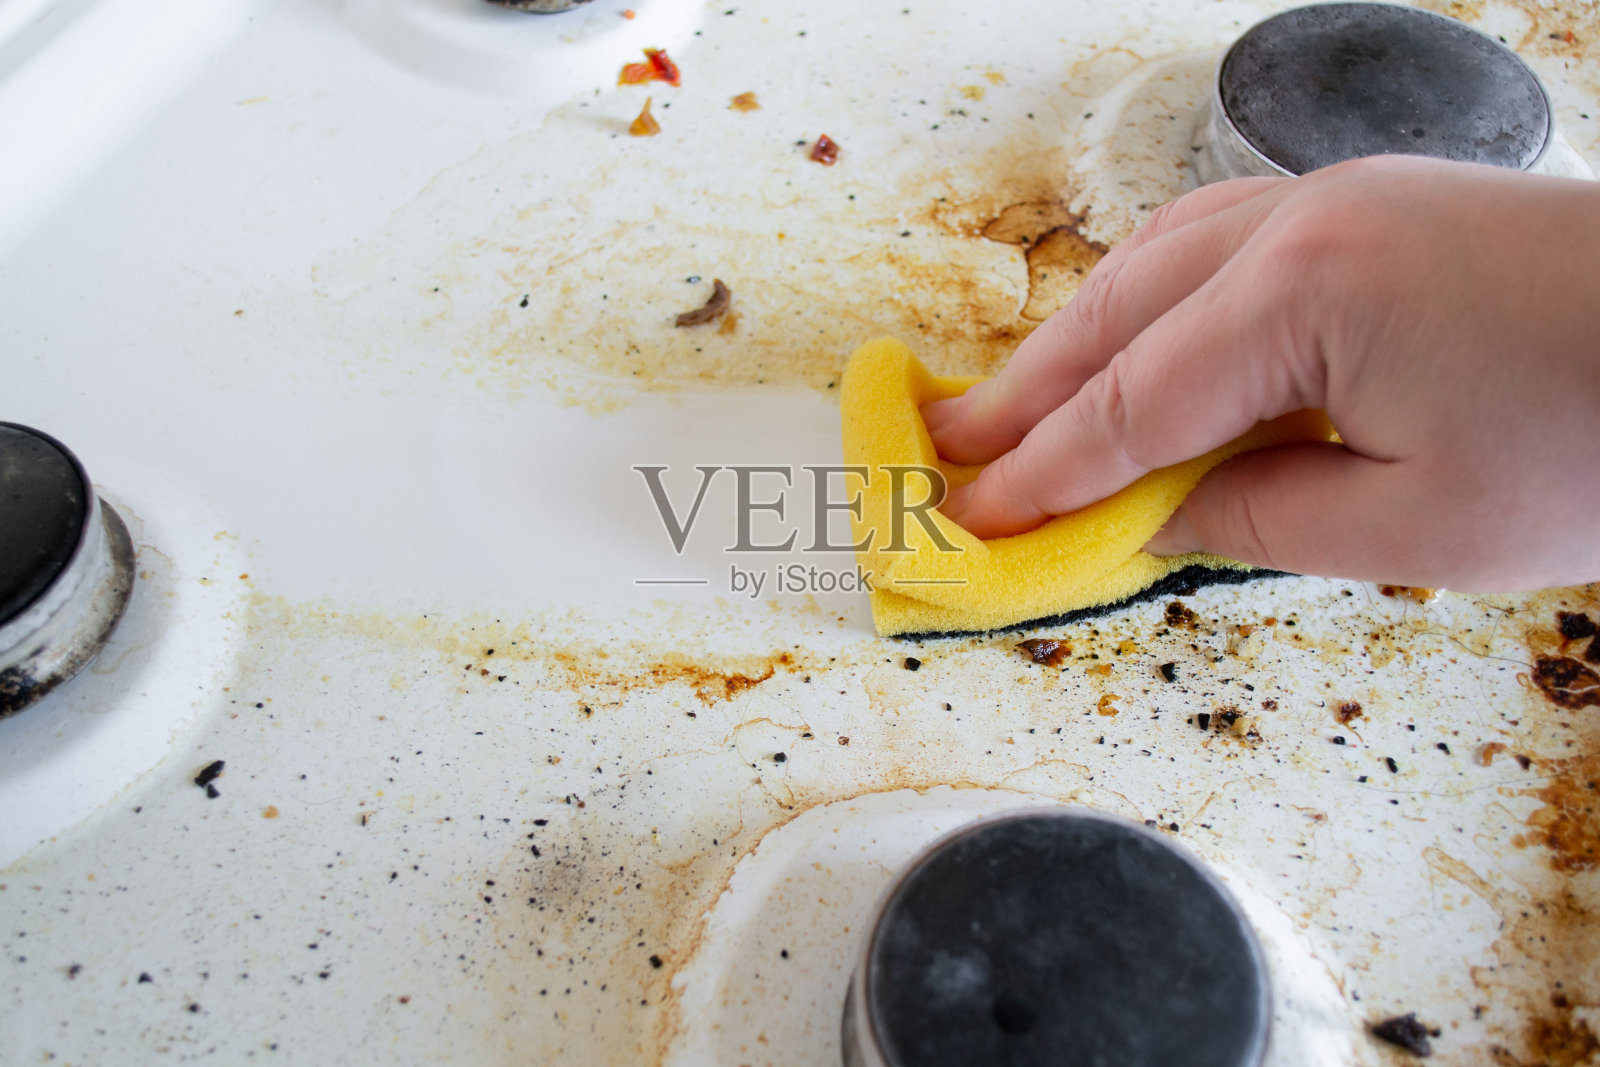 一只手用黄色的洗涤海绵清洗煤气炉非常脏油腻的表面。海绵擦拭后，会留下干净的痕迹照片摄影图片